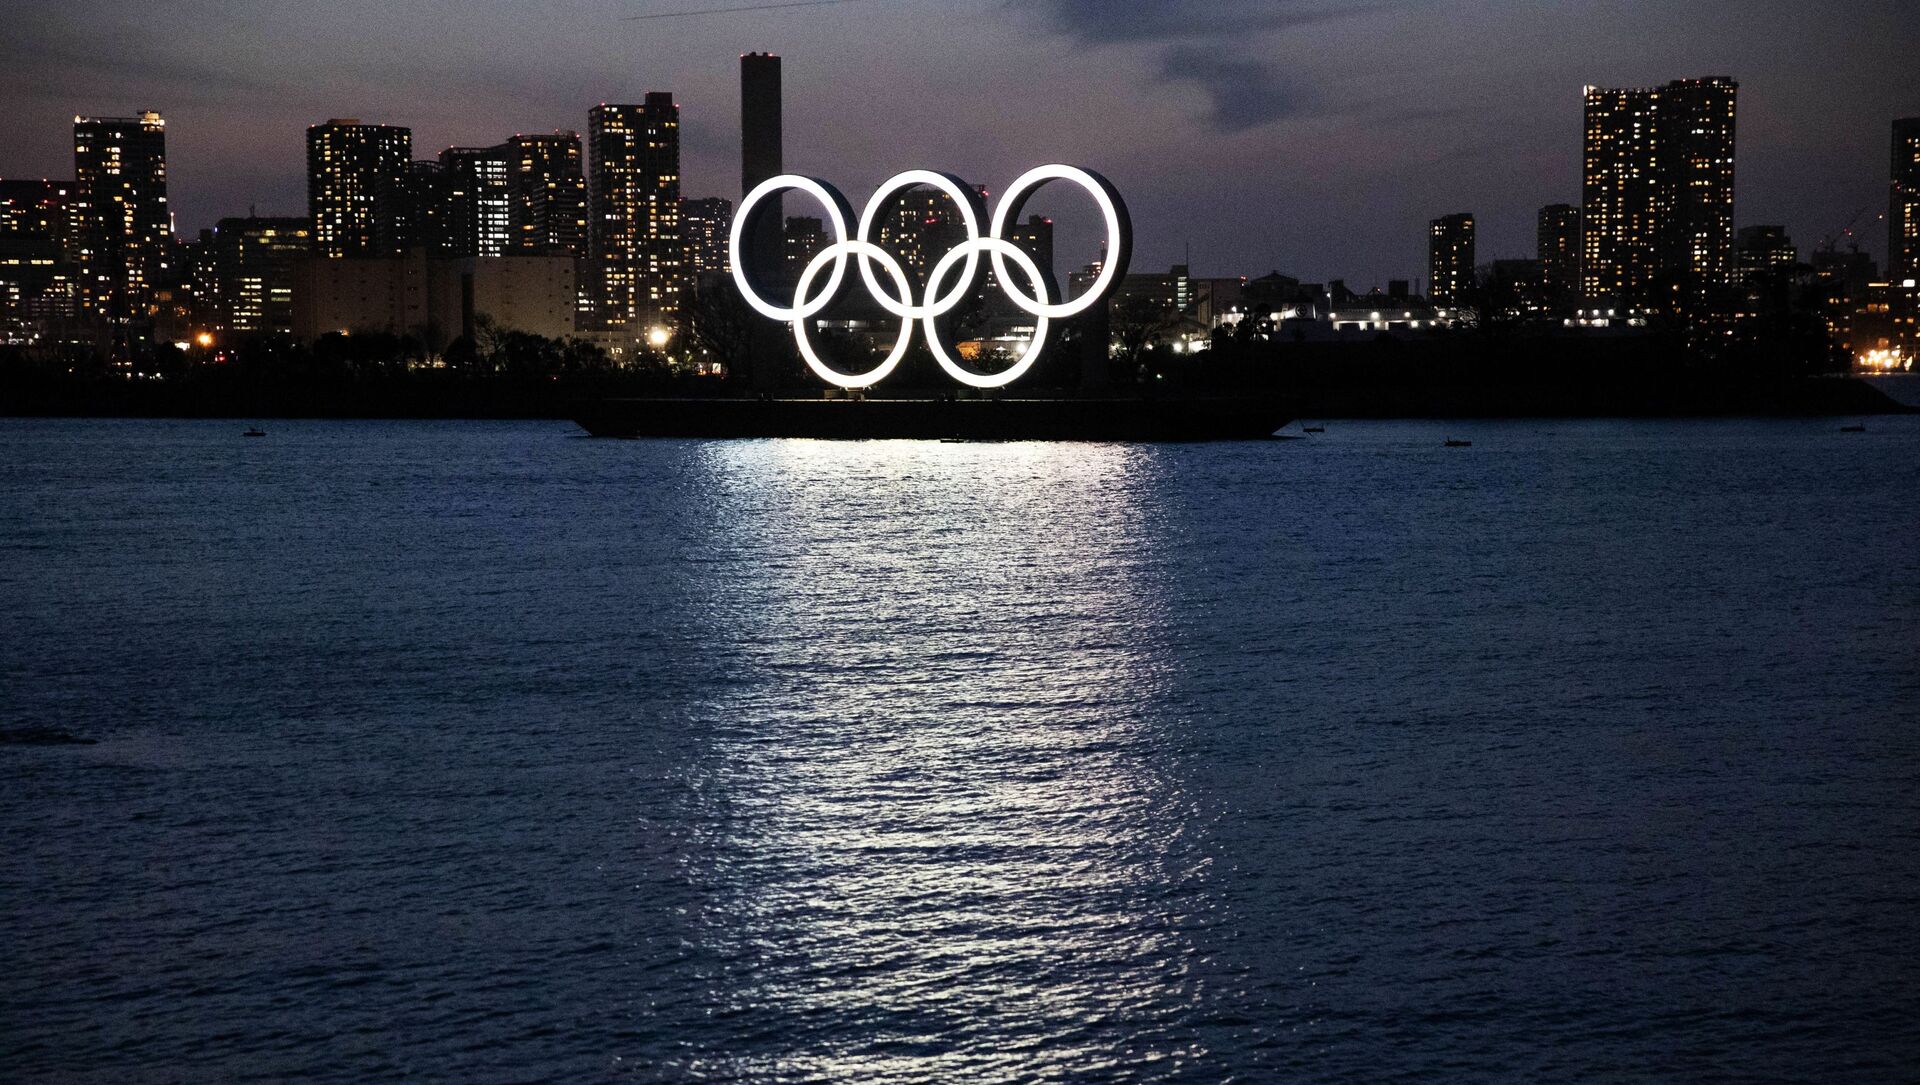 Монумент из пяти олимпийских колец, построенный к планировавшейся на лето 2020 года Олимпиаде в Японии, фото из архива - Sputnik Азербайджан, 1920, 05.07.2021